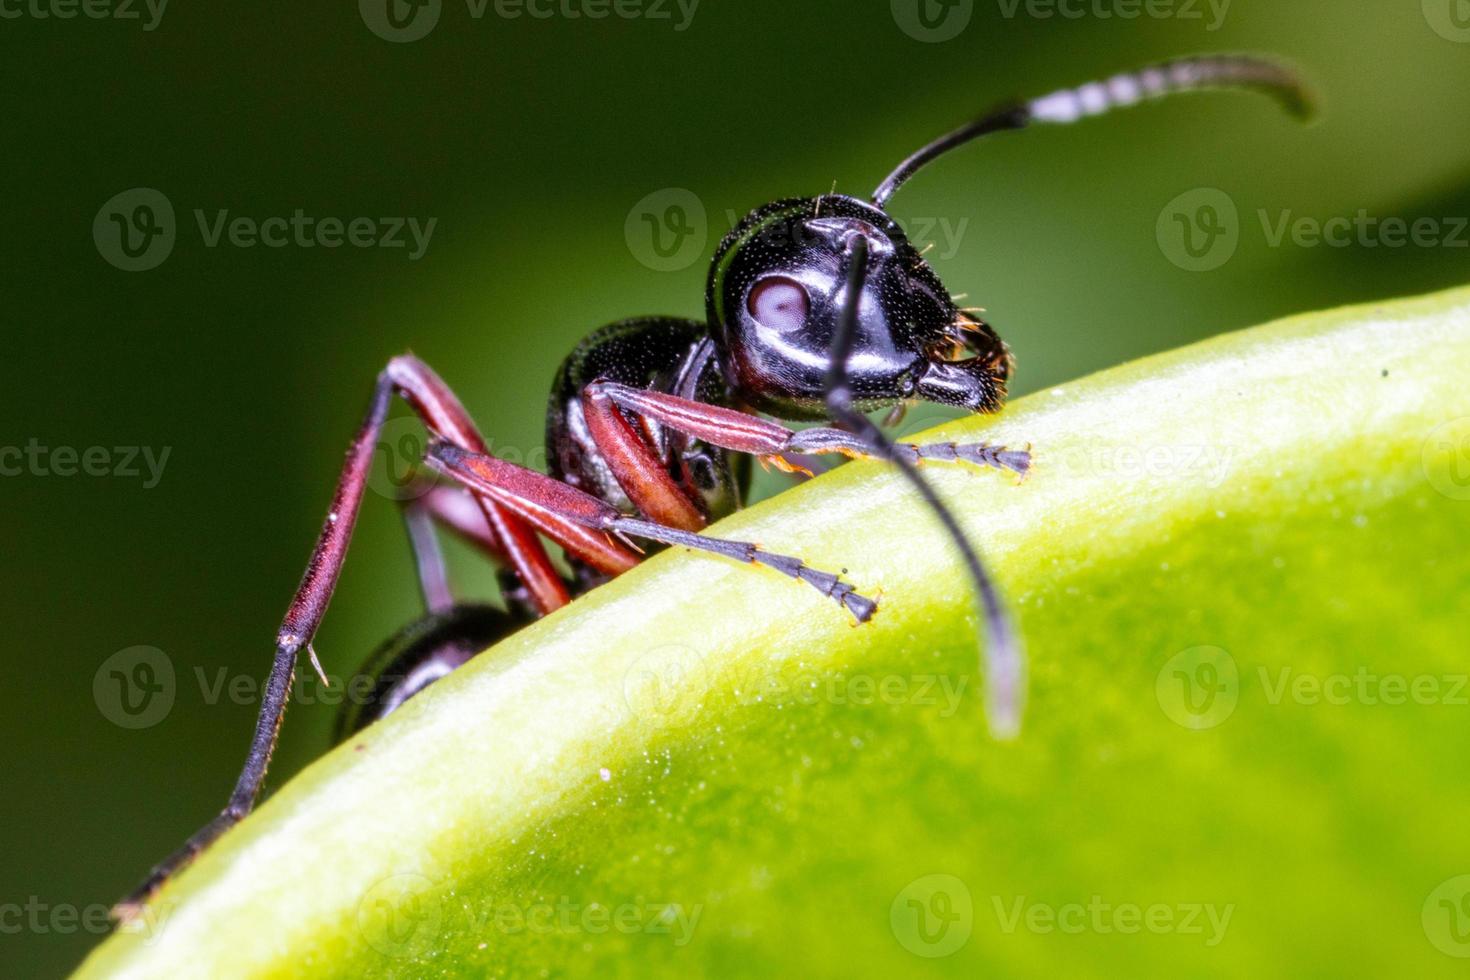 närbild svart myra på grönt blad. foto